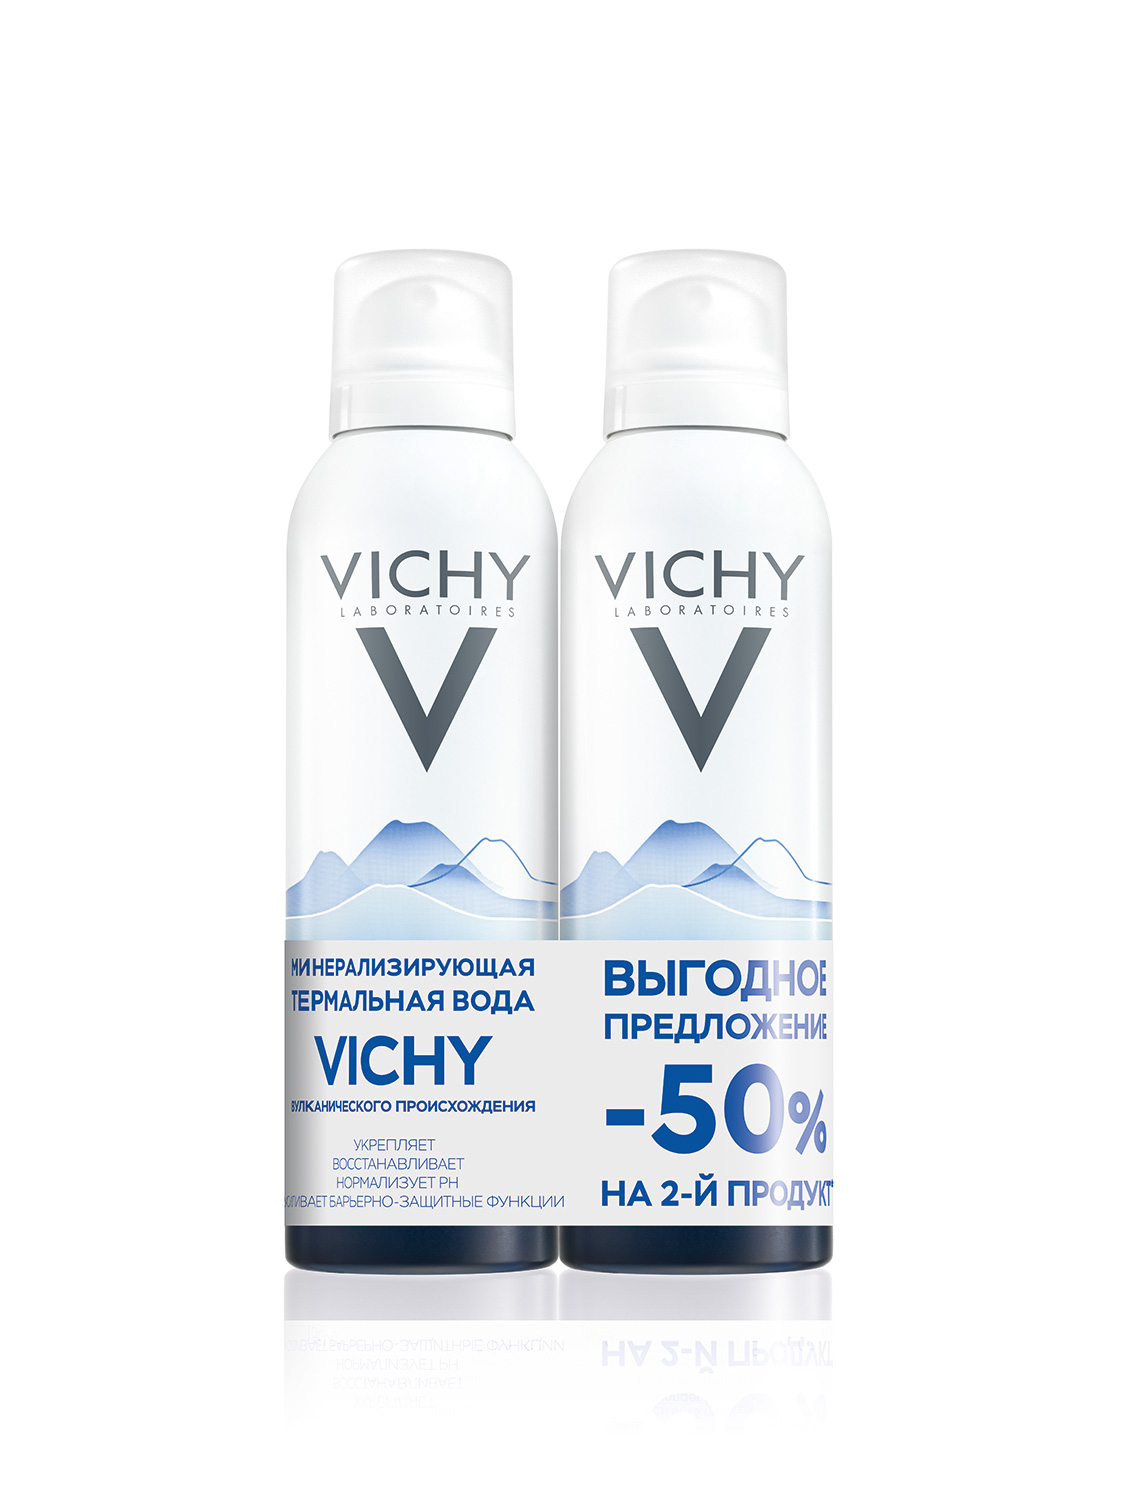 Термальная вода vichy. Виши (Vichy) вода термальная 150 мл. Виши (Vichy) вода термальная 50 мл. Виши (Vichy) вода термальная 300 мл. Виши минерализирующая термальная вода.